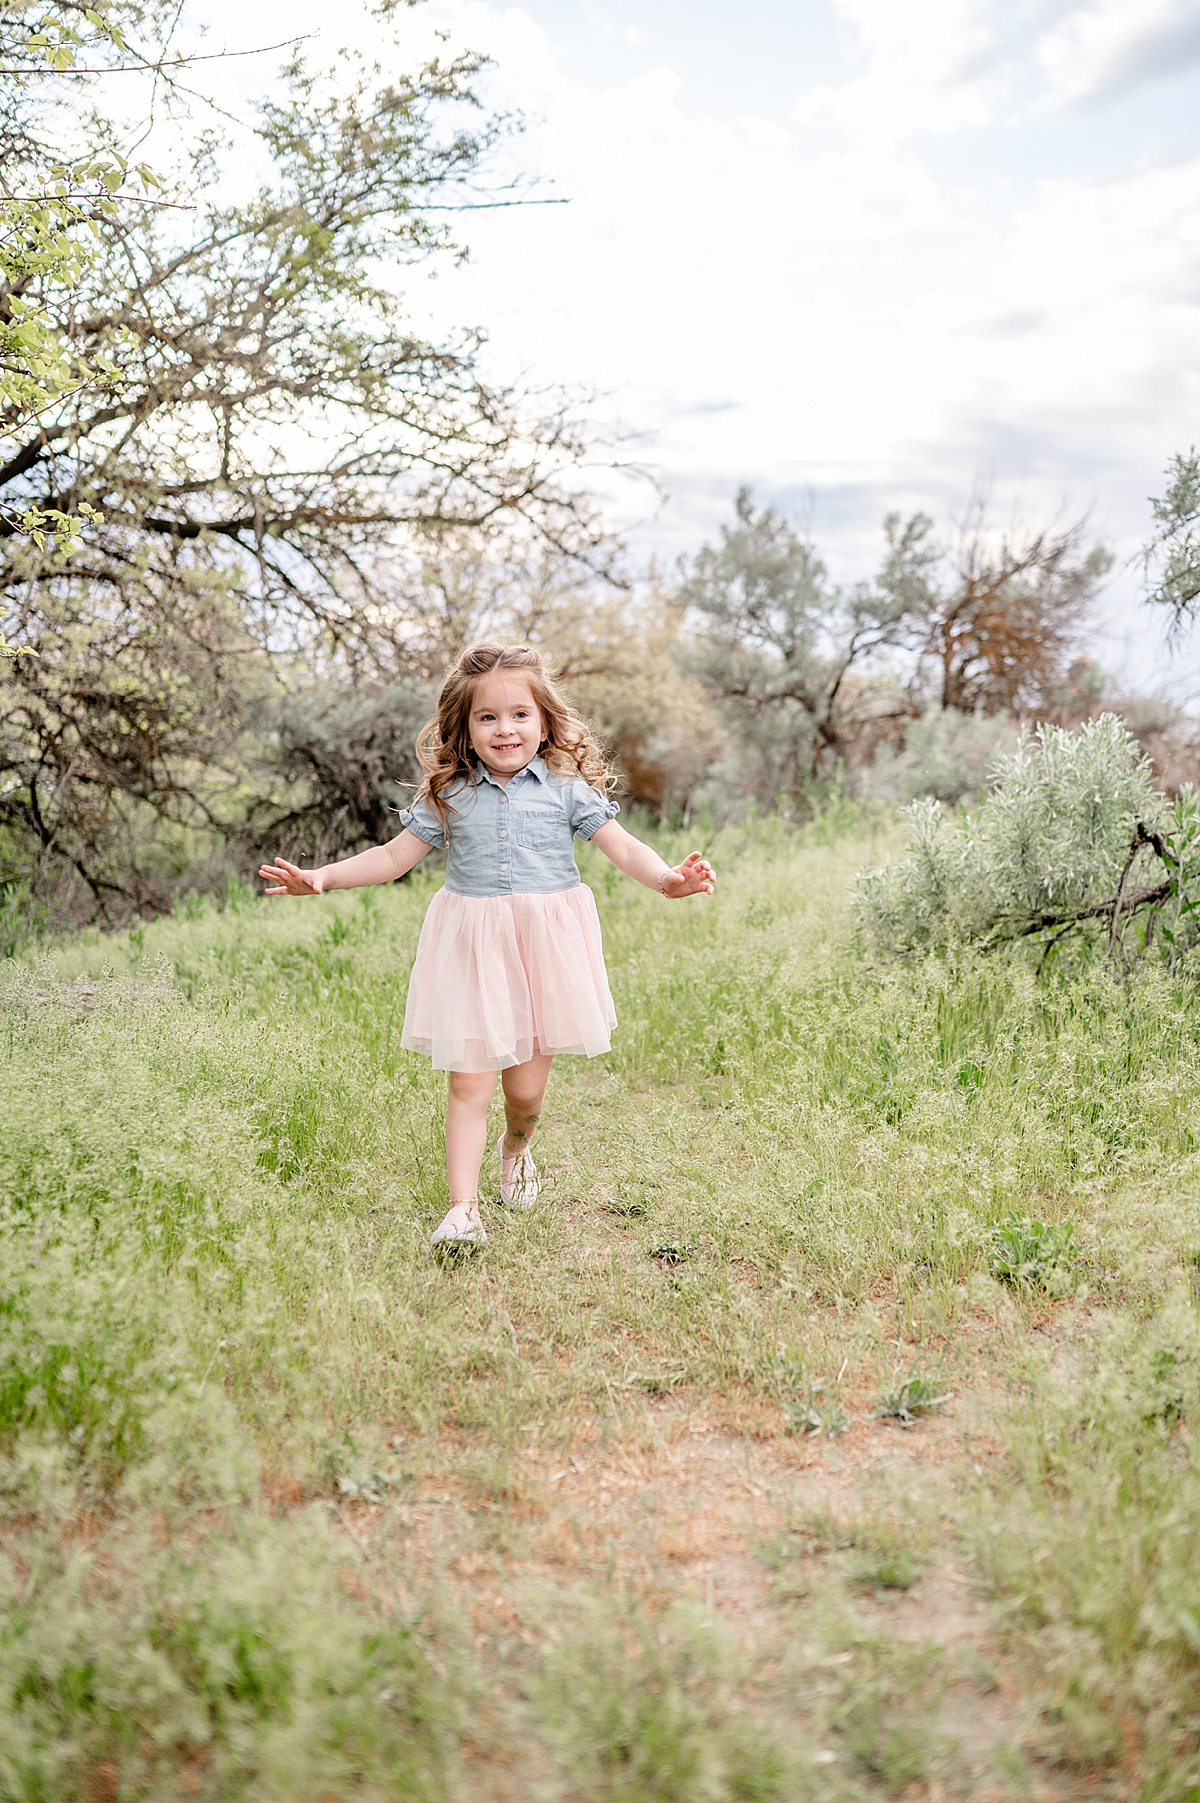 Little girl in a dress runs through the grass.